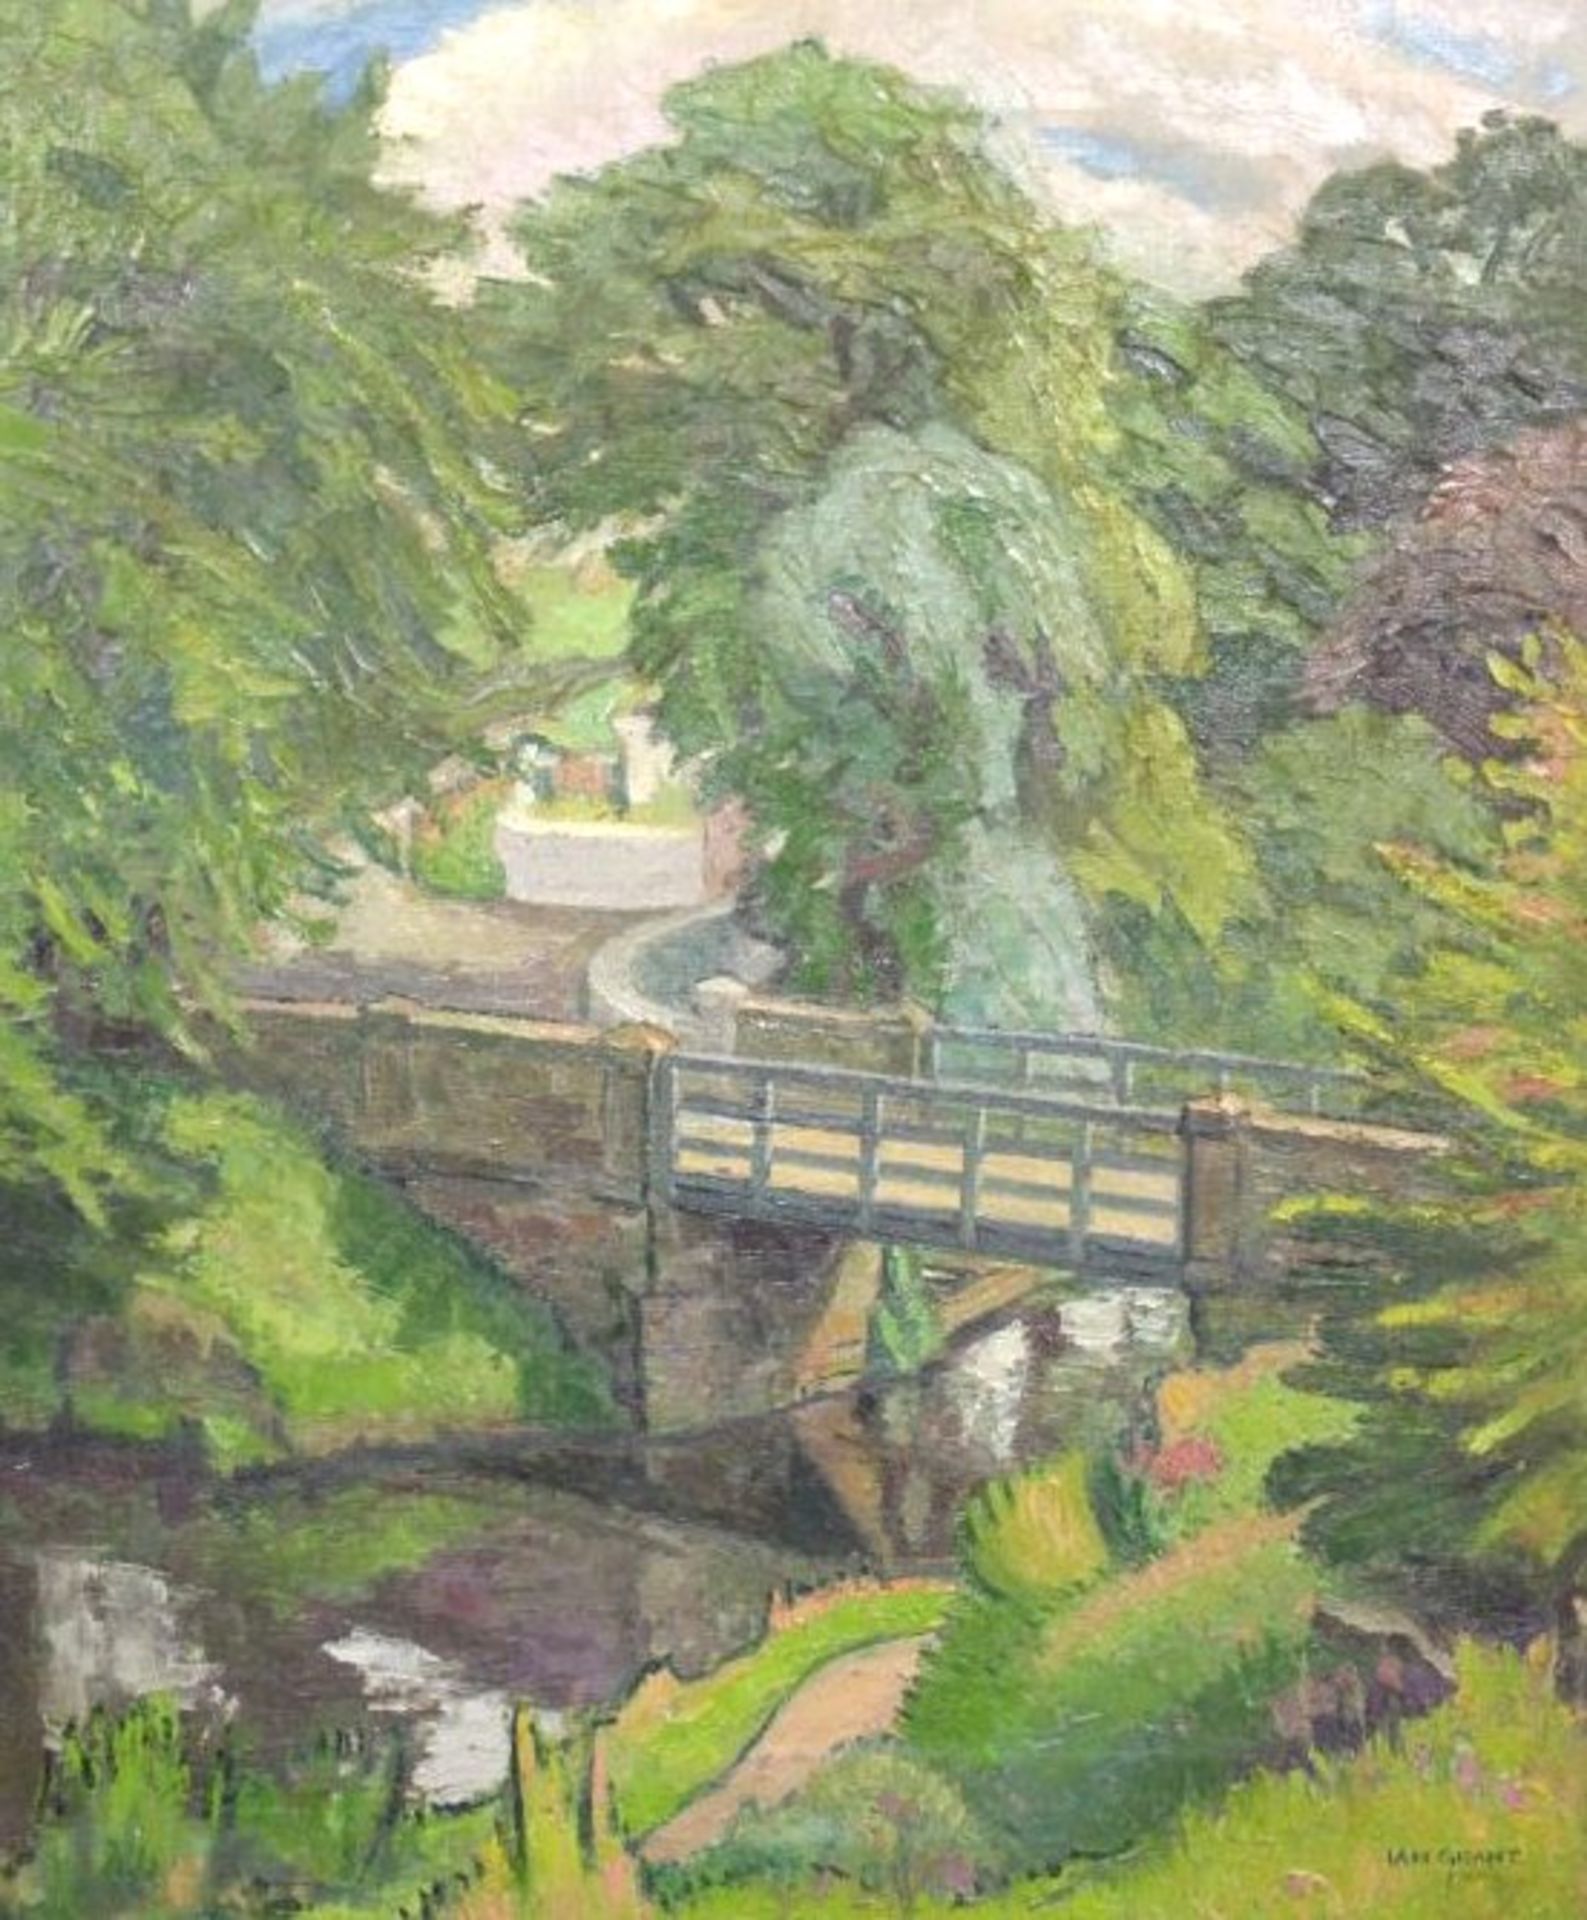 Ian McDonald GRANT (1904-1993), Brücke, Öl/Leinwand, erworben in einer Galerie in Basel 1989 für